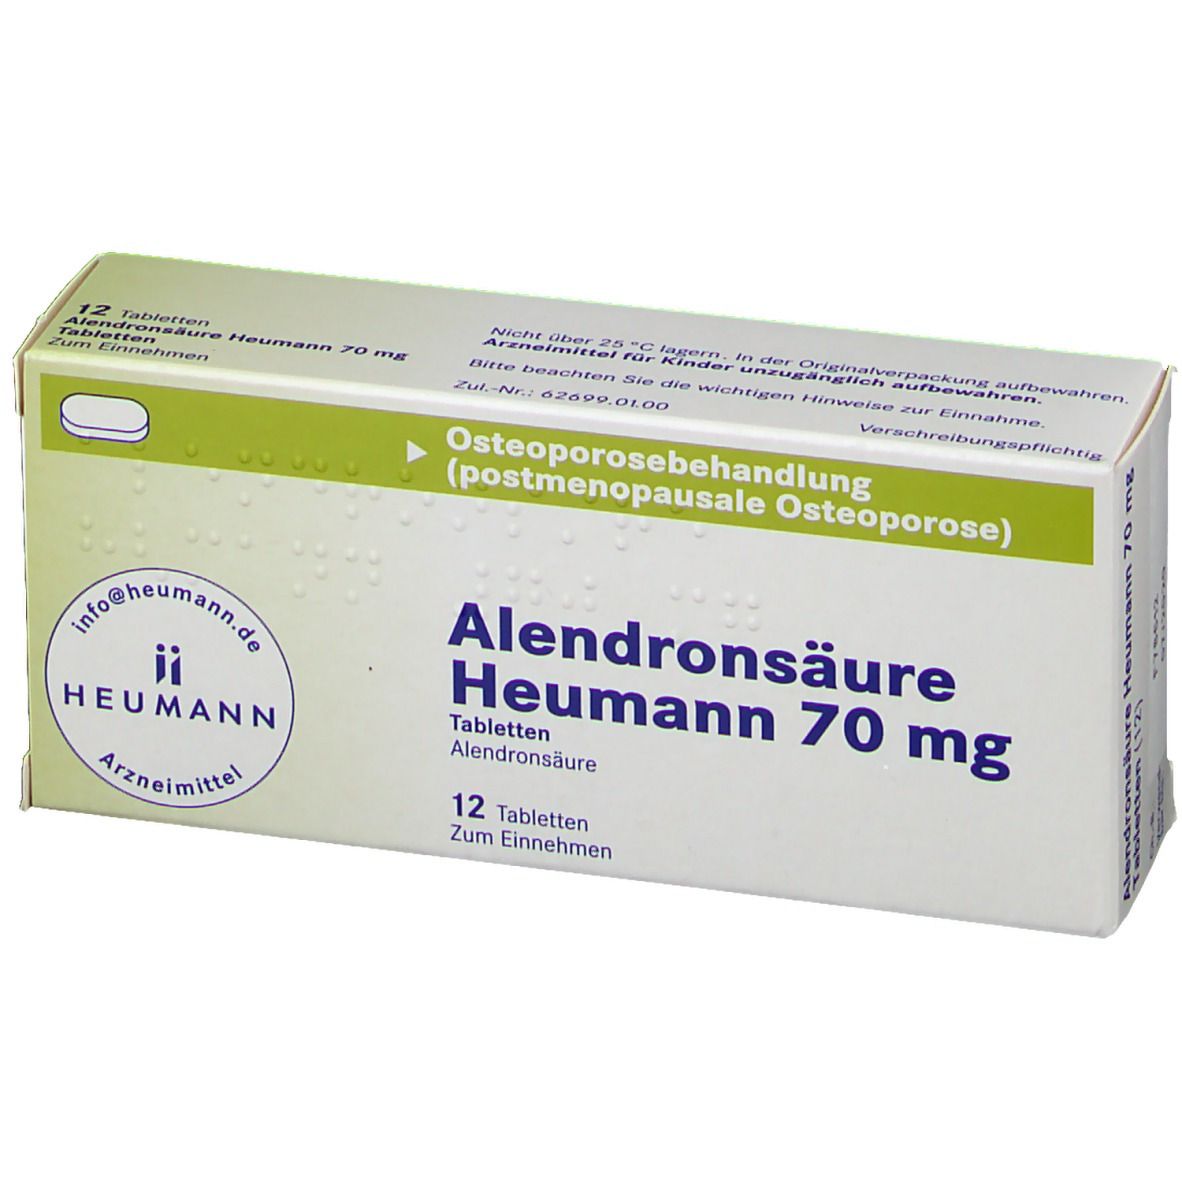 Alendronsäure Heumann 70 mg